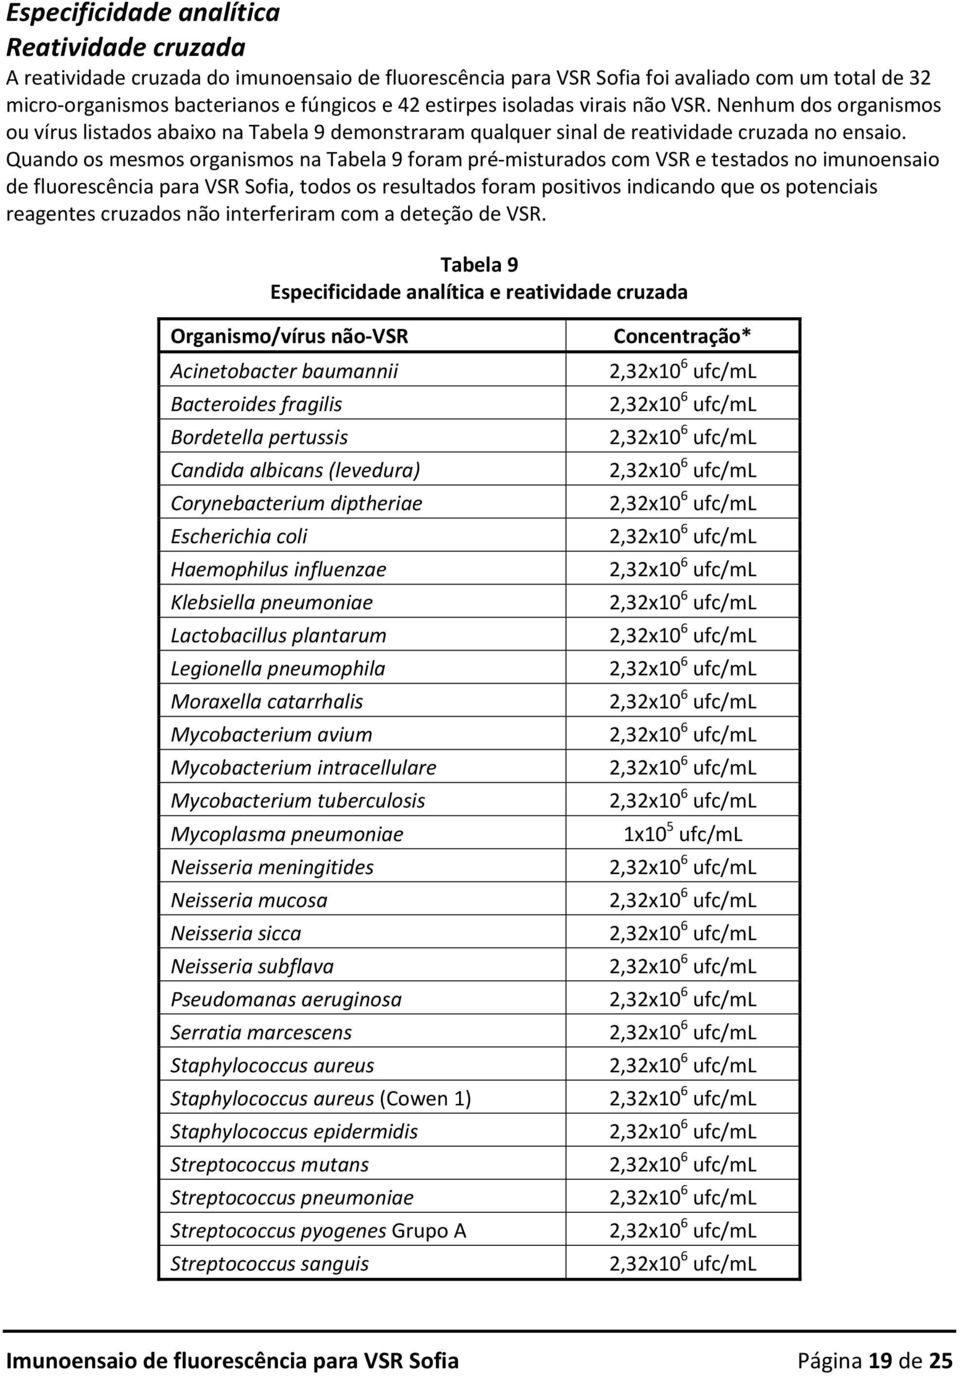 Quando os mesmos organismos na Tabela 9 foram pré misturados com VSR e testados no imunoensaio de fluorescência para VSR Sofia, todos os resultados foram positivos indicando que os potenciais